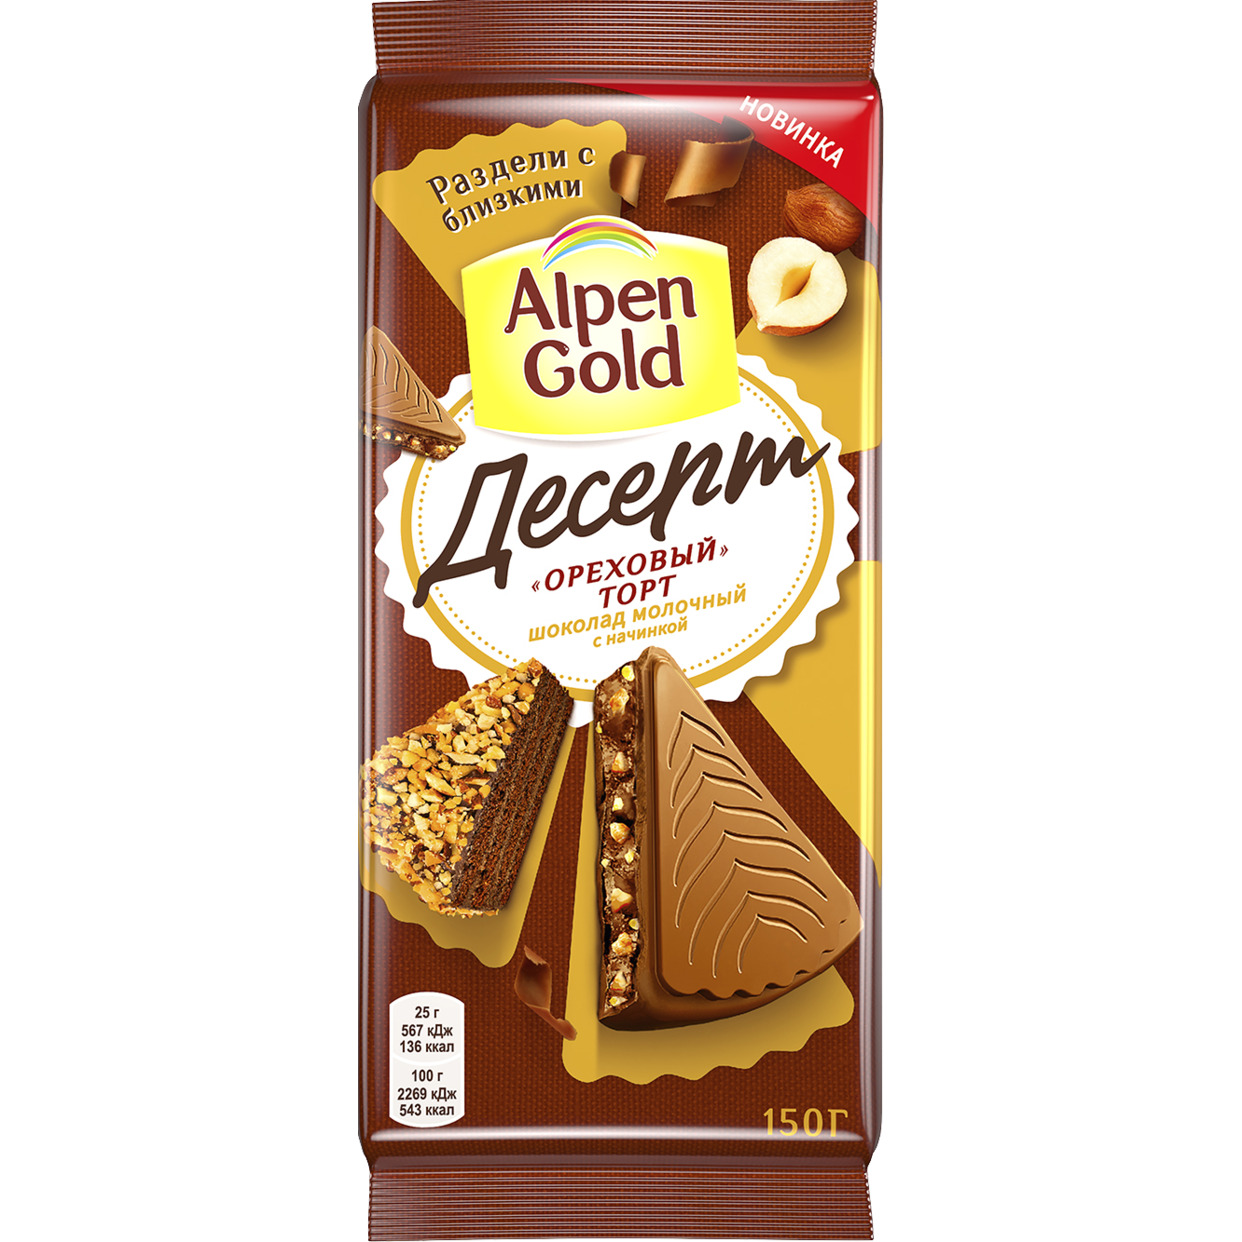 Шоколад молочный Alpen Gold Альпен Гольд Десерт Ореховый торт с начинкой с фундуком, какао и кусочками печенья, 150г по акции в Пятерочке